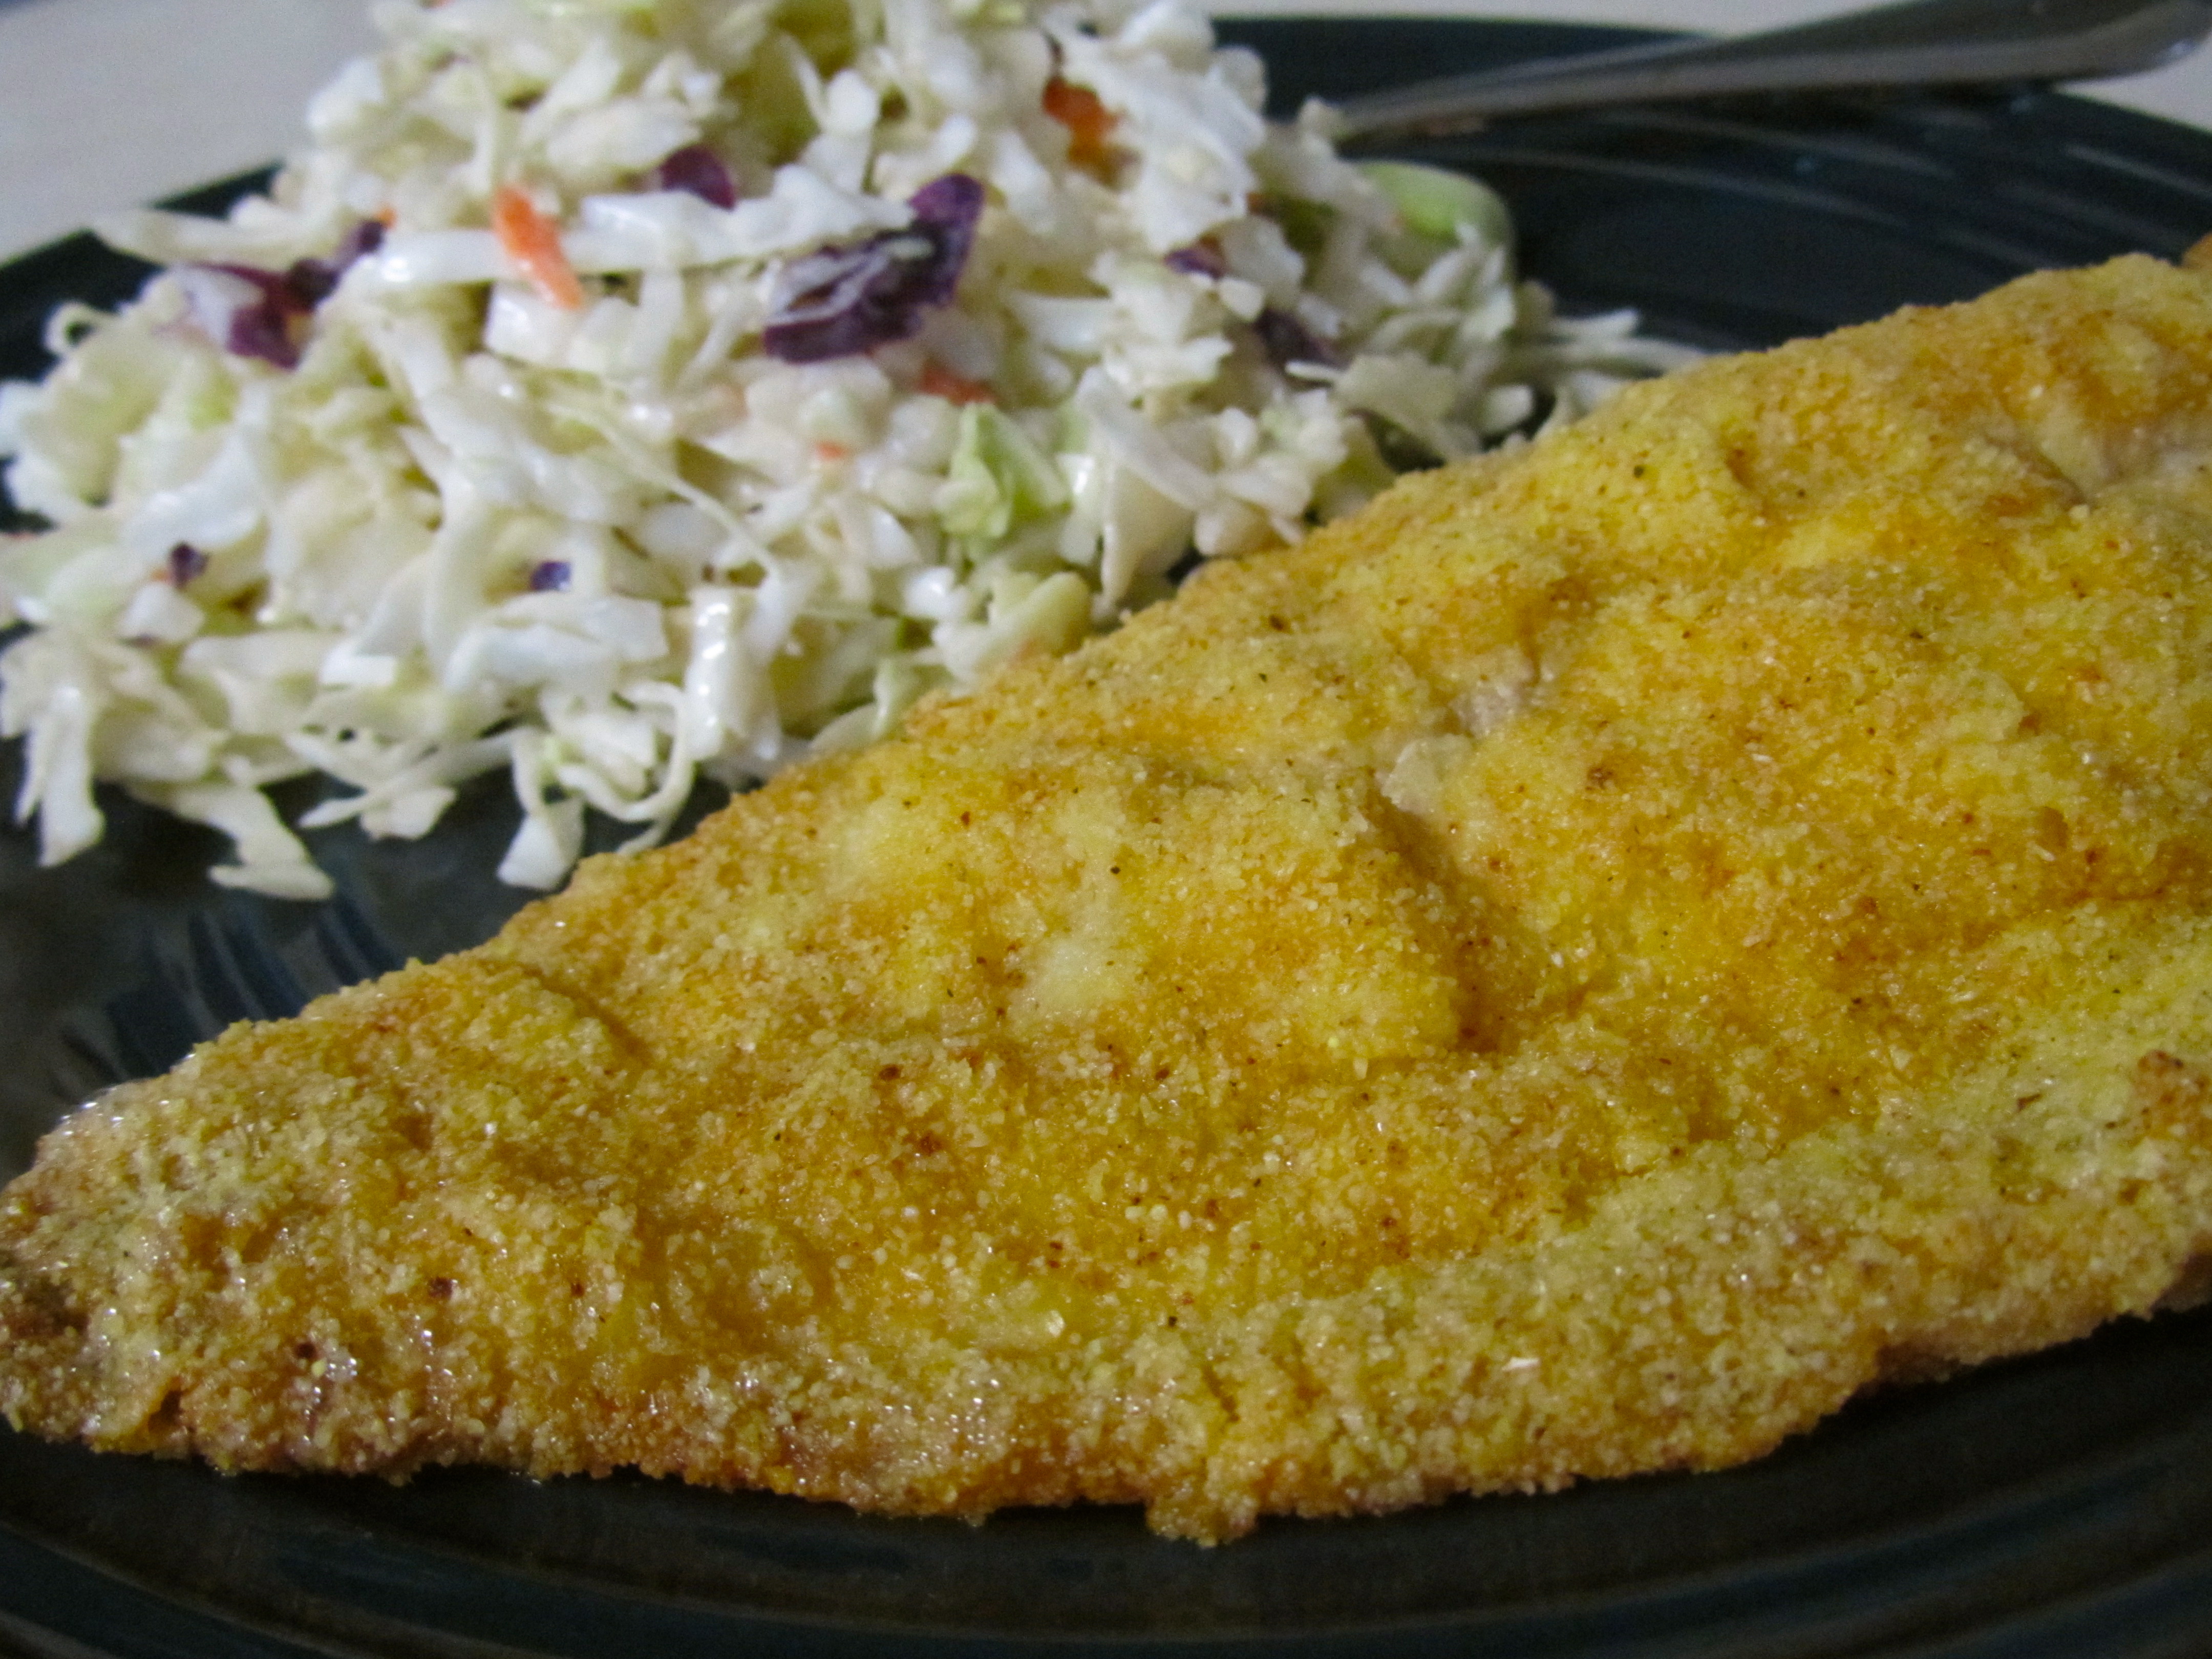 fried catfish dinner